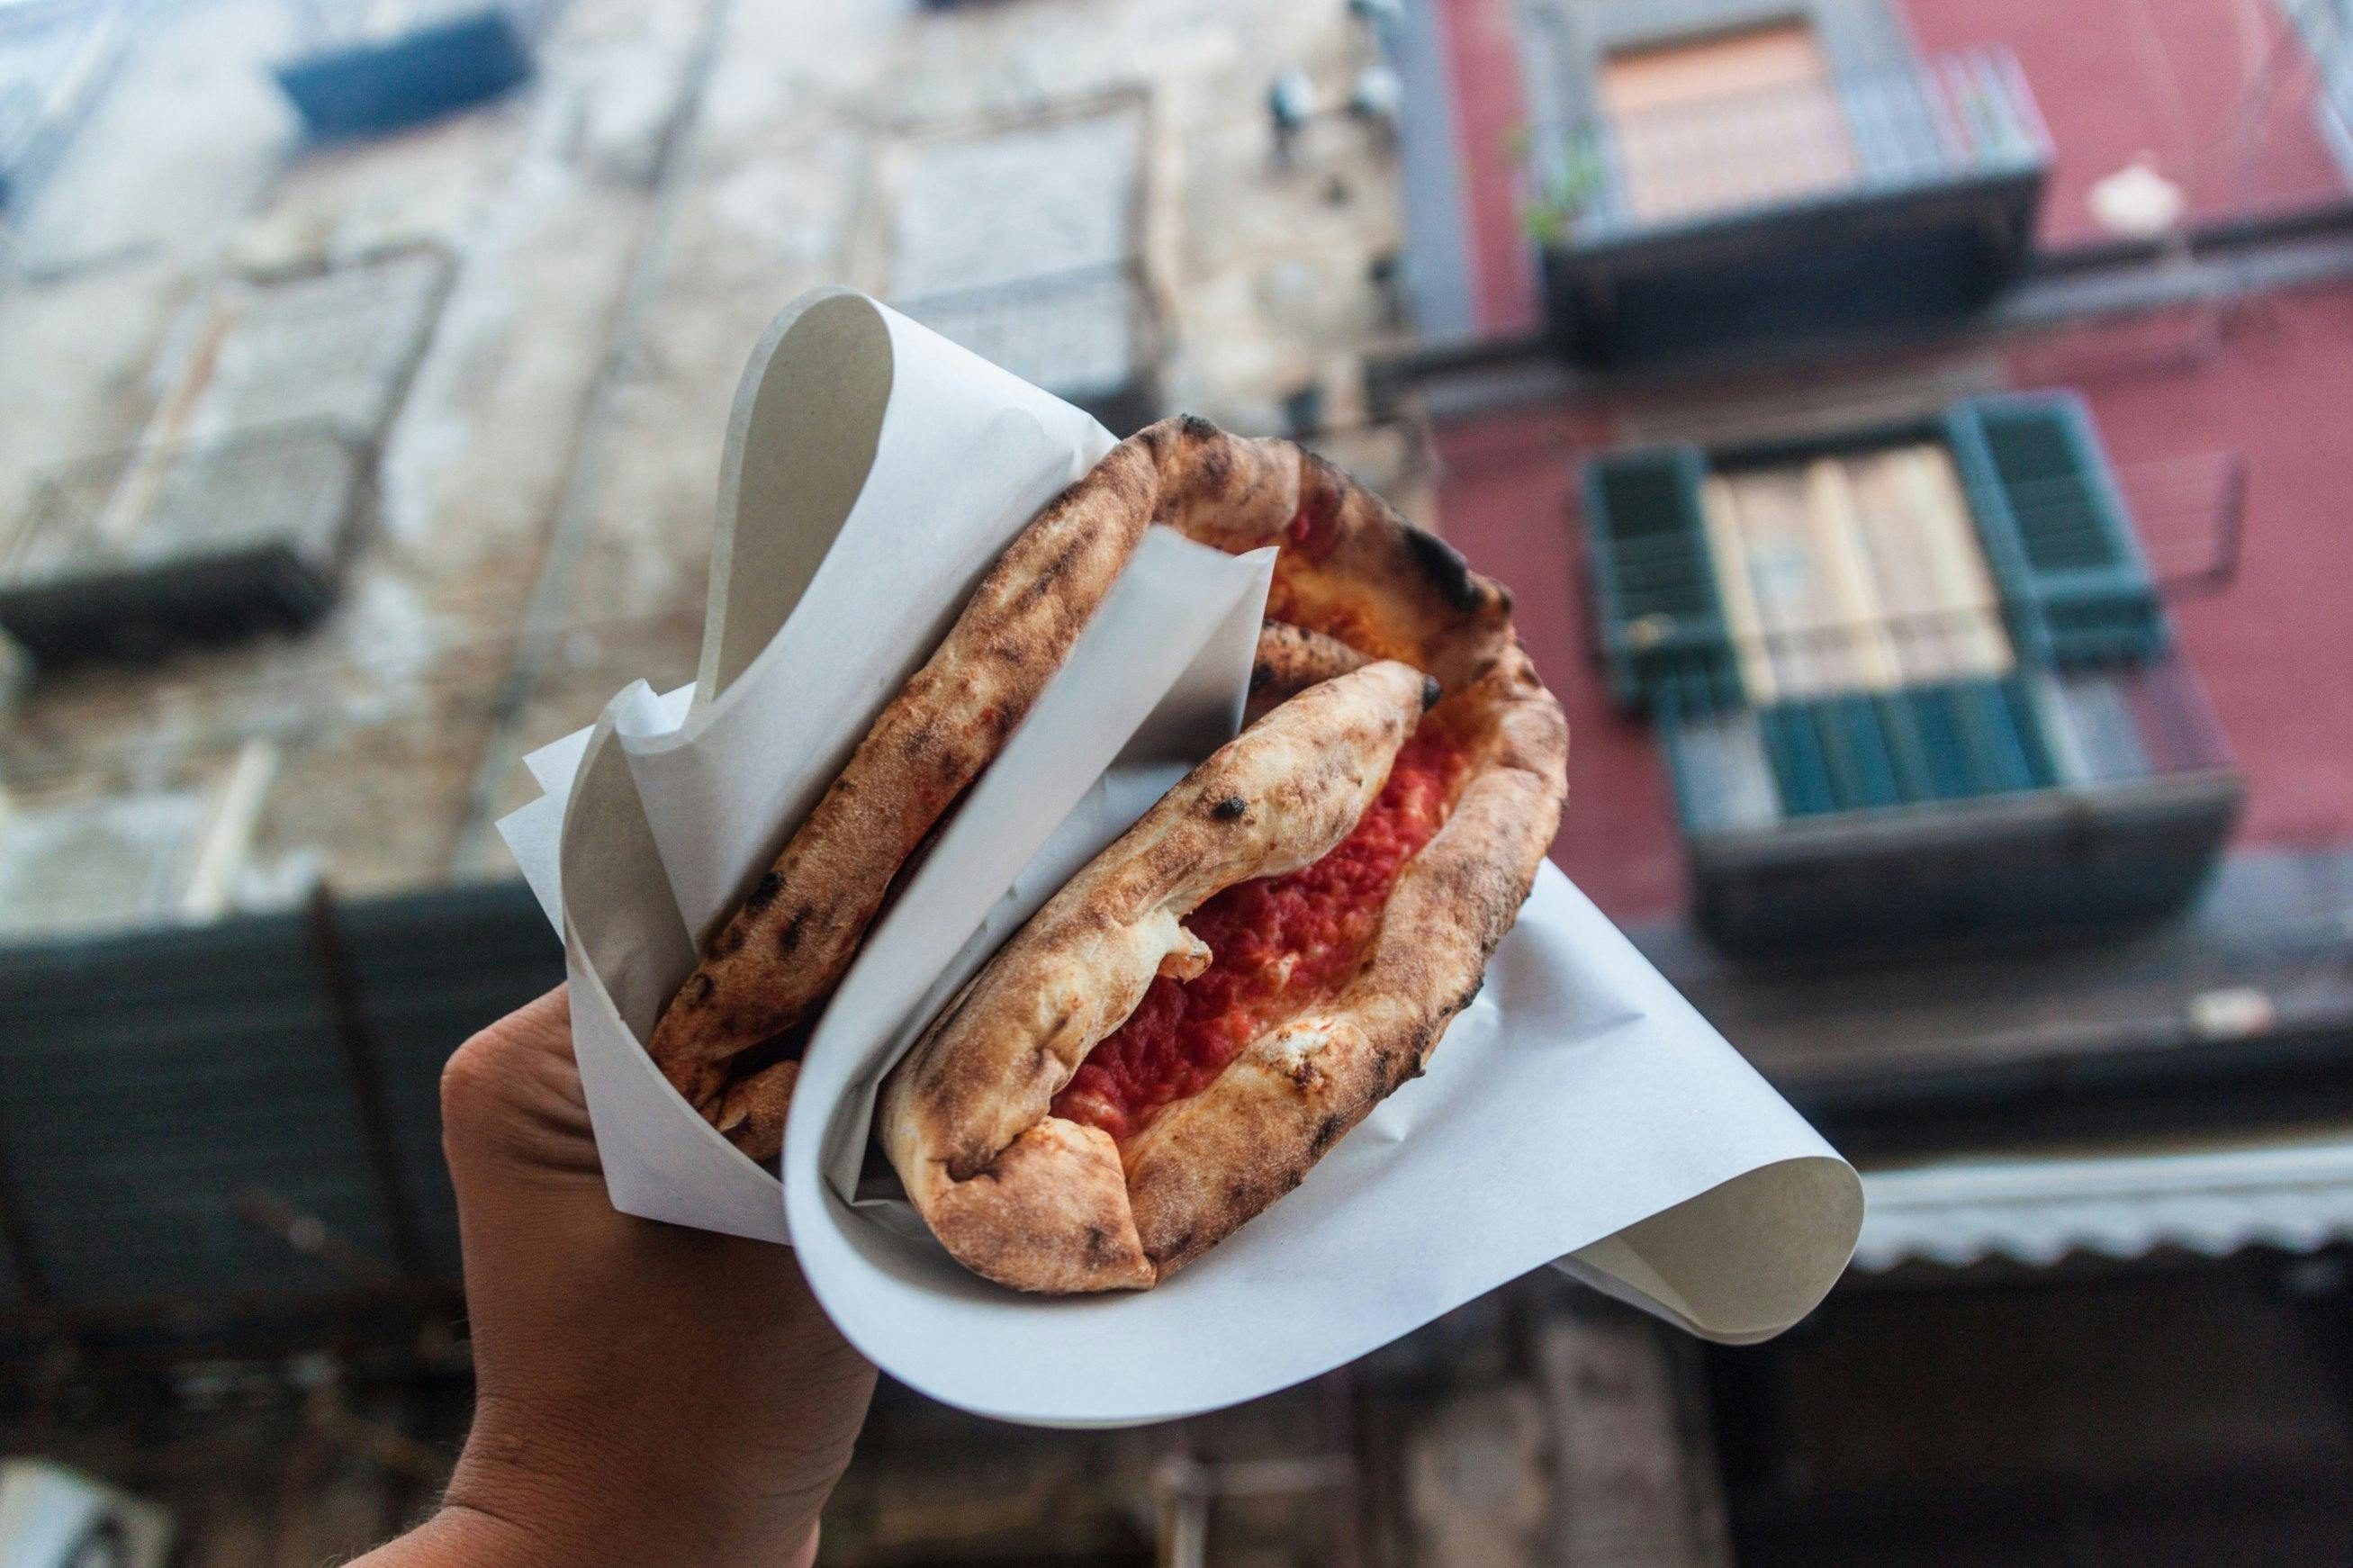 Naples street food tour